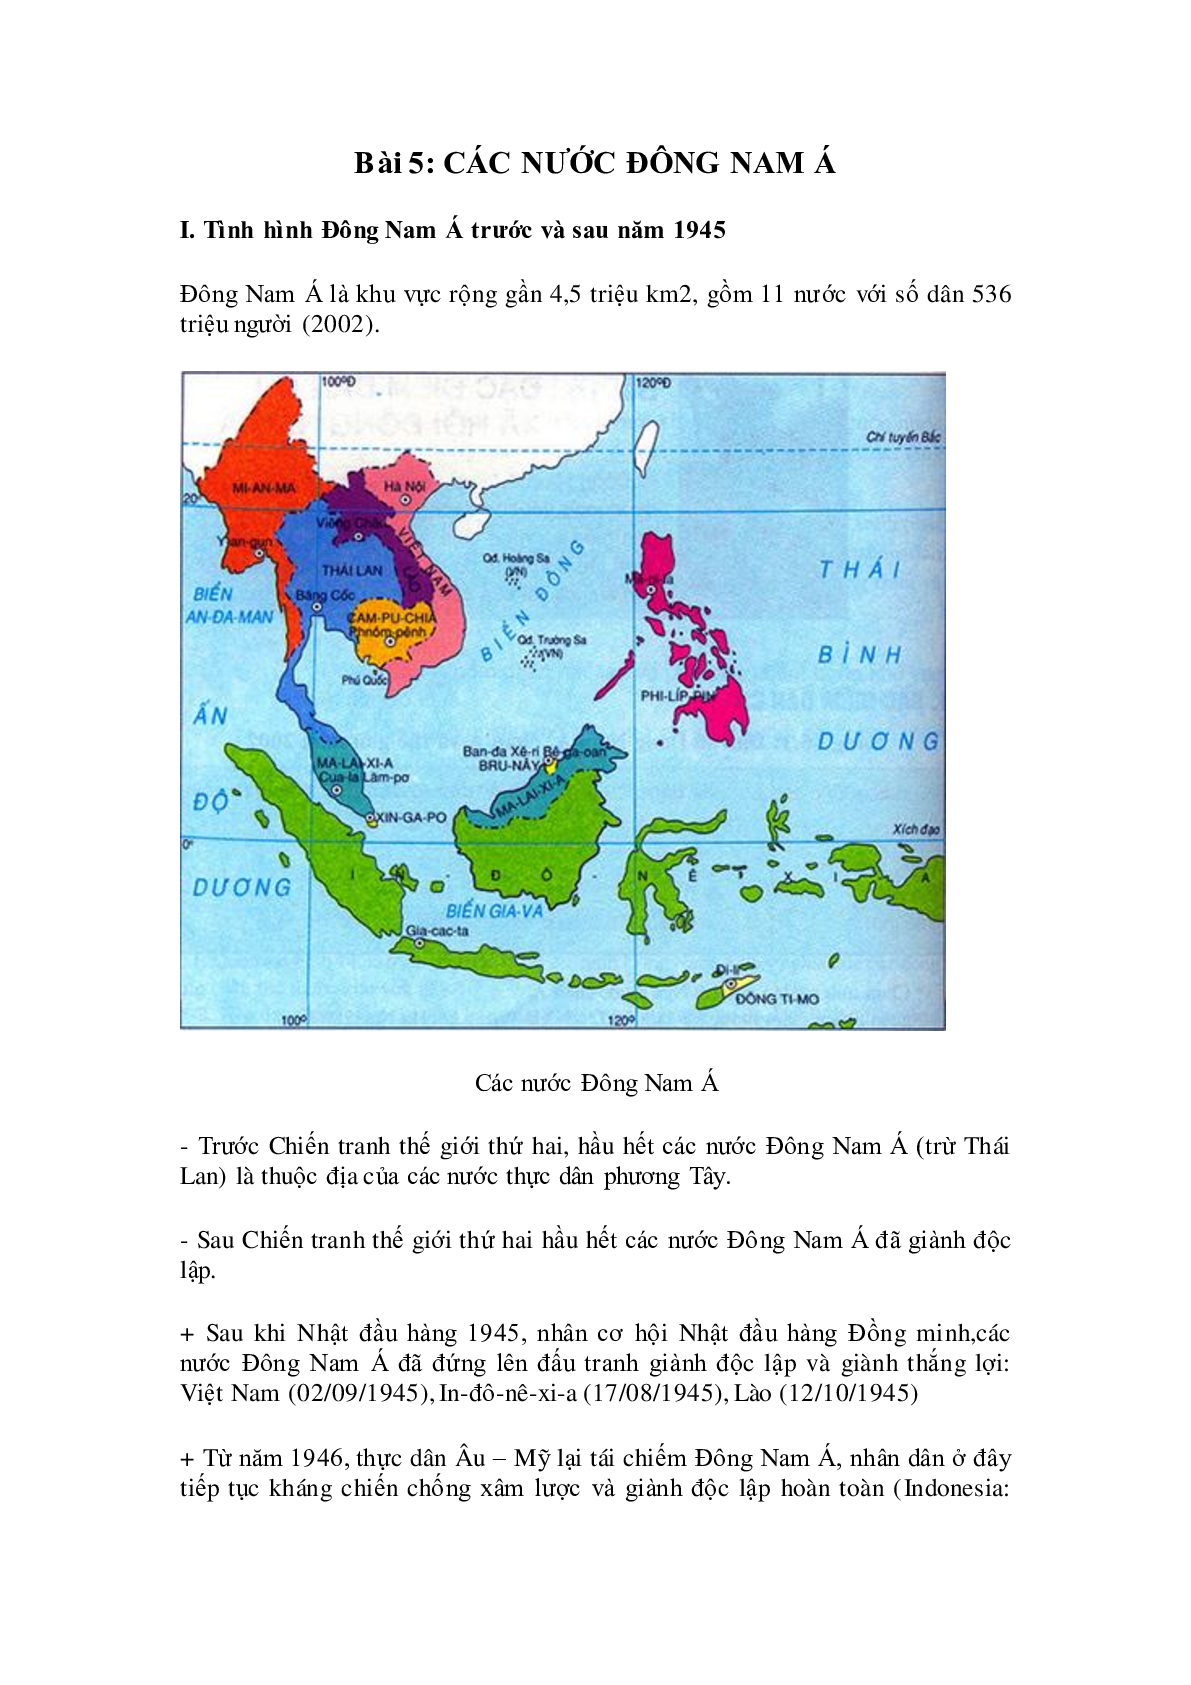 Lý thuyết Lịch sử 9: Bài 5: Các nước Đông nam á mới nhất (trang 1)